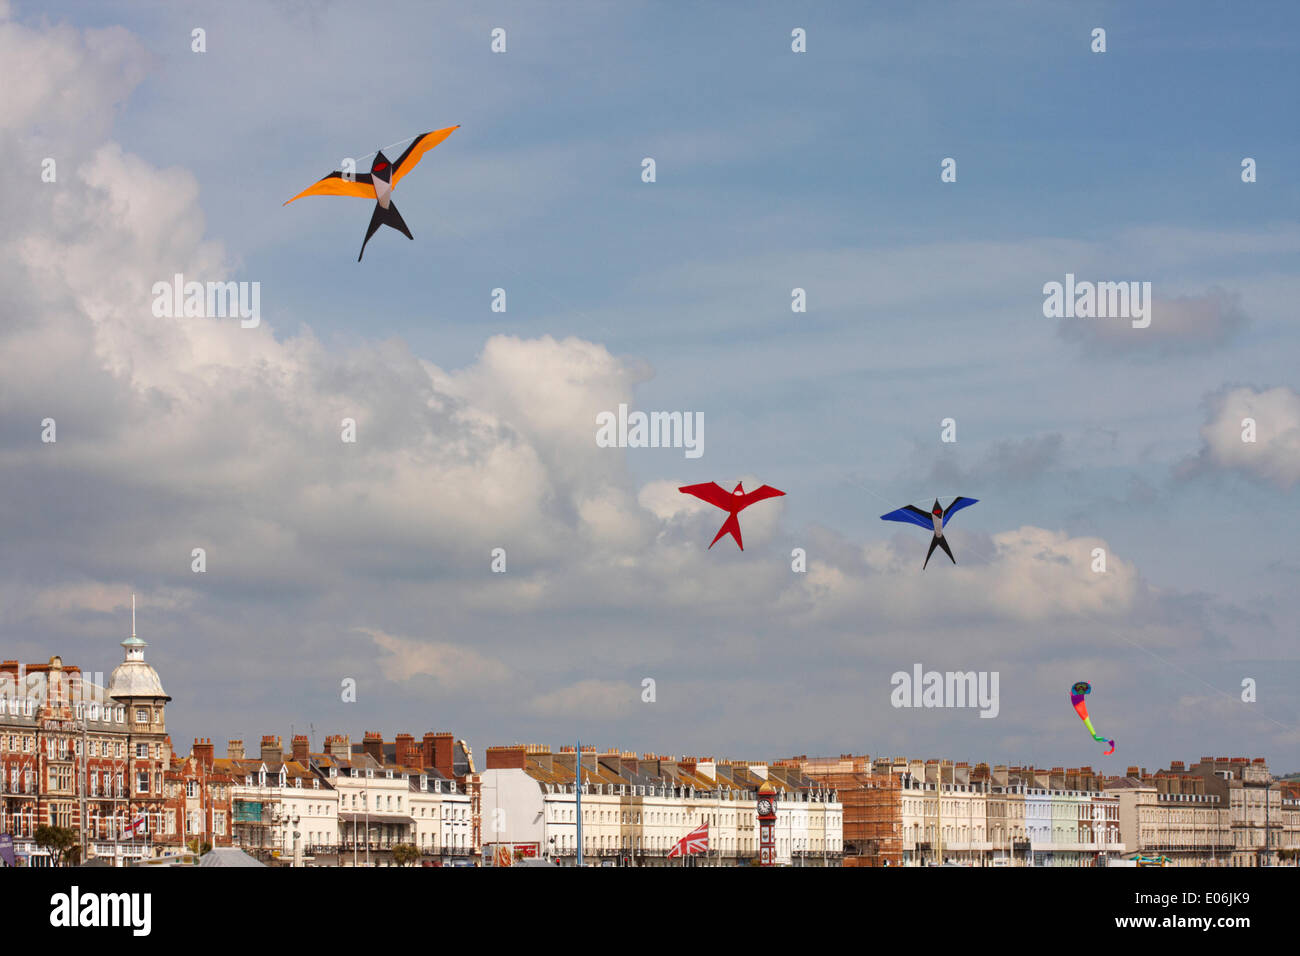 Weymouth, Dorset UK. 04.. Mai 2014. Besucher können beim Weymouth Kite Festival die Vielfalt der farbenfrohen Drachen am Himmel zu Musik tanzen sehen, die wie Vögel geformt sind, die am blauen Himmel fliegen. Kredit: Carolyn Jenkins/Alamy Live News Stockfoto